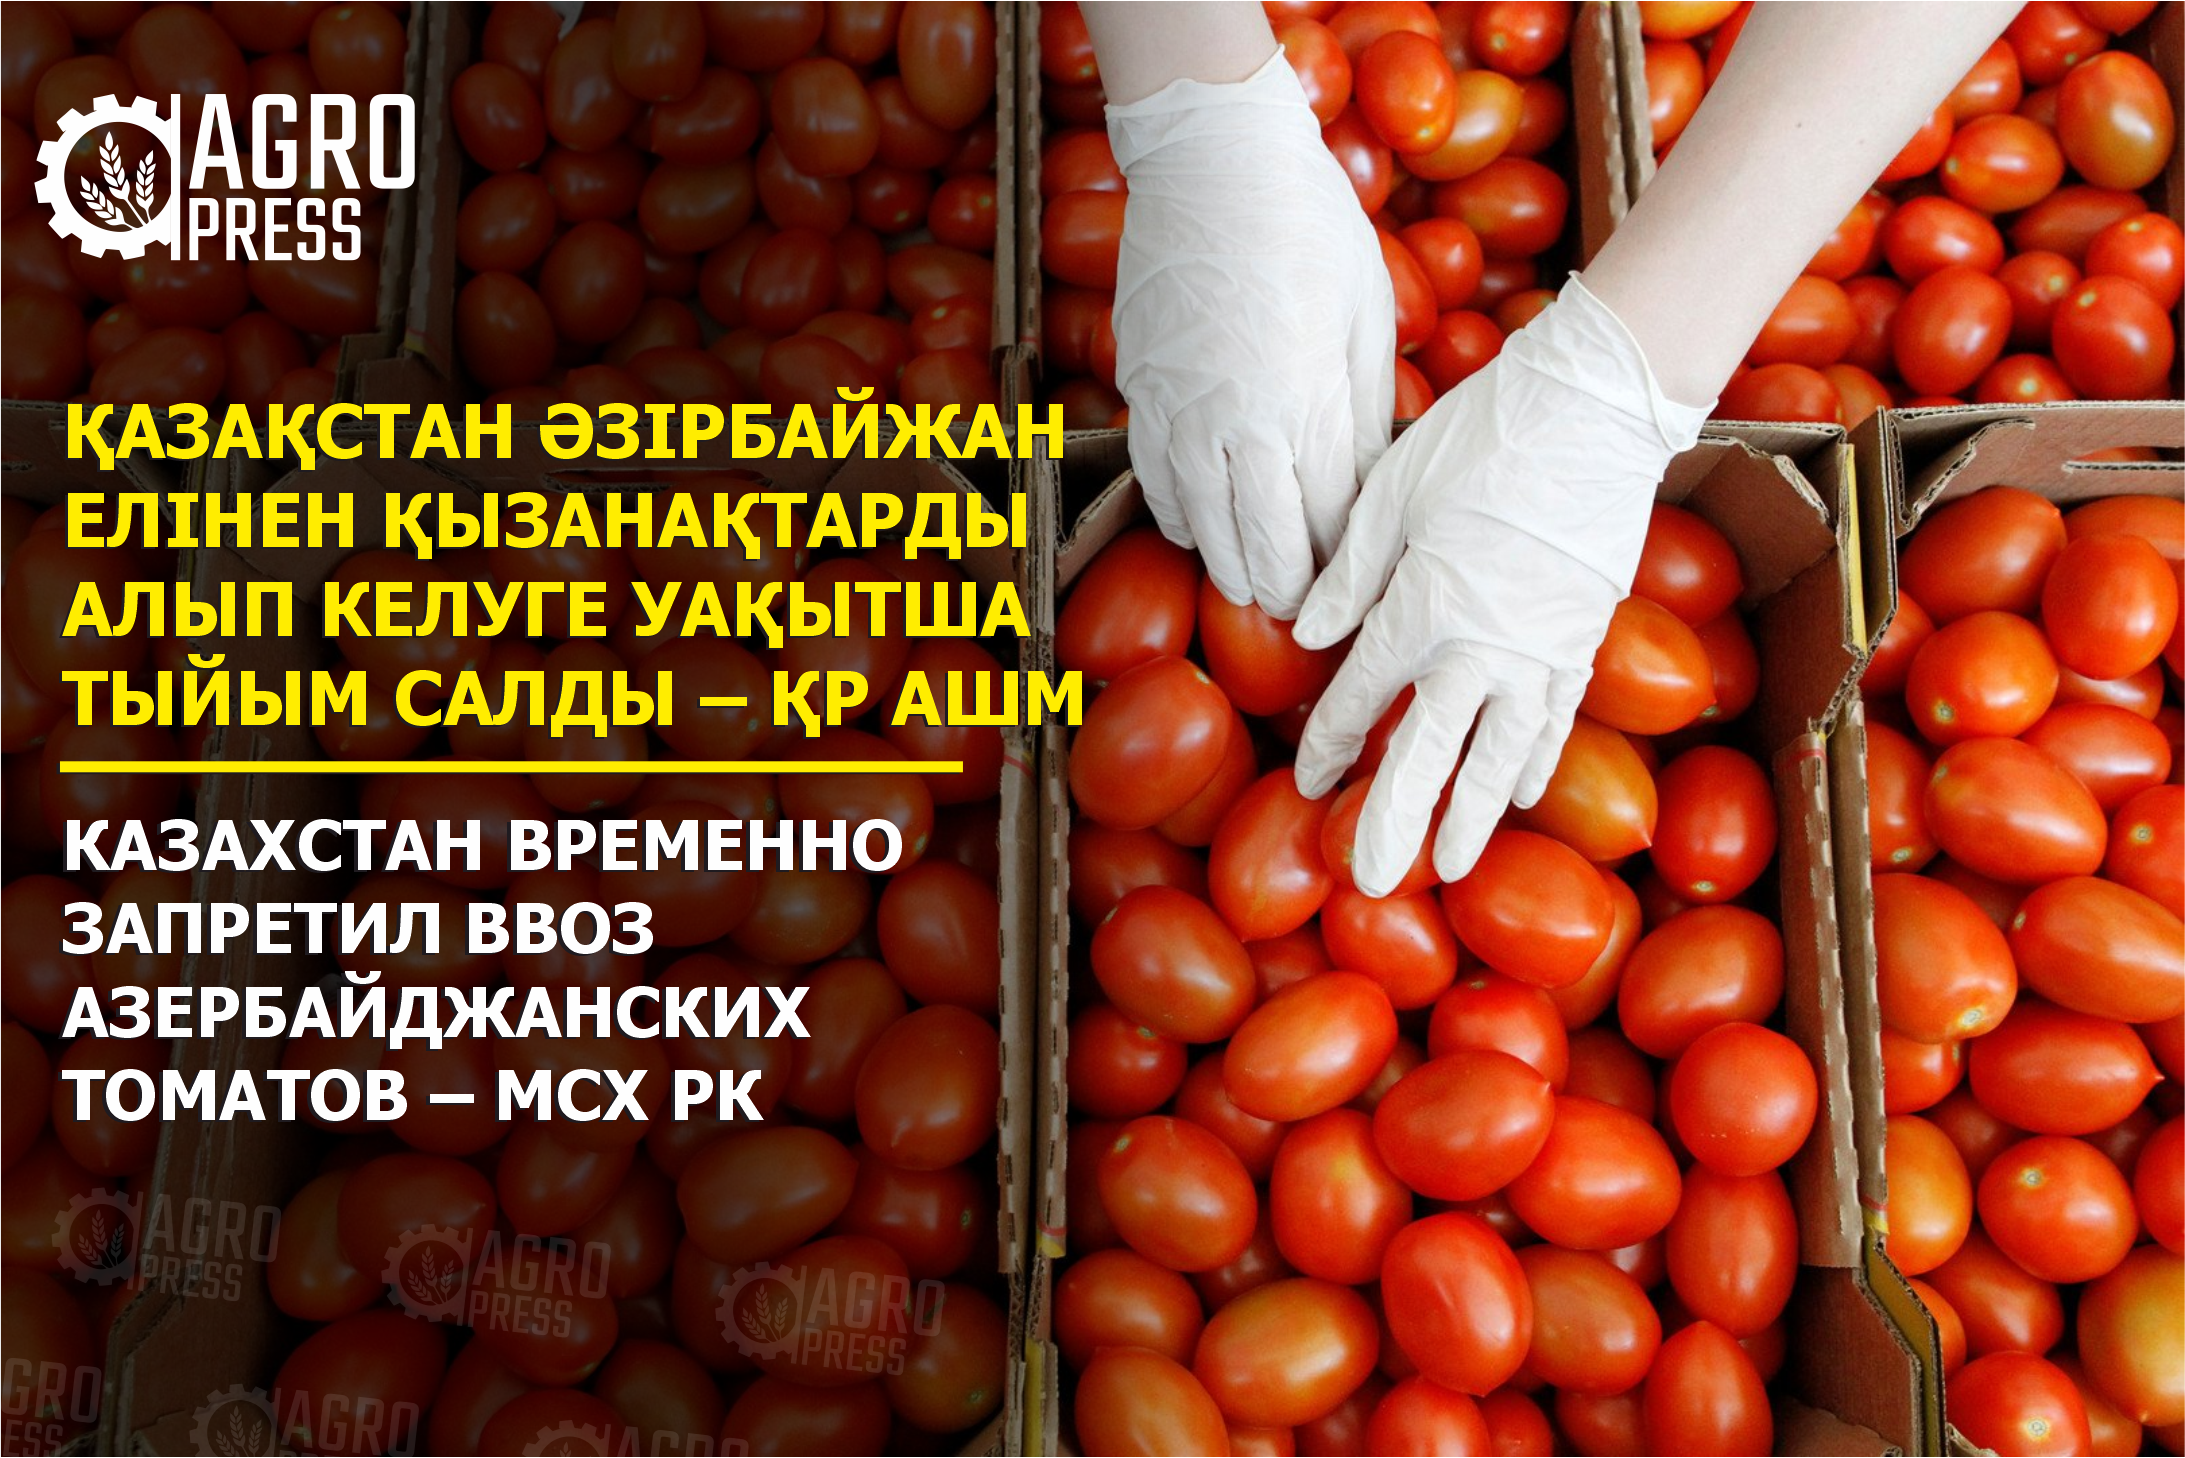 Казахстан временно запретил ввоз азербайджанских томатов – МСХ РК